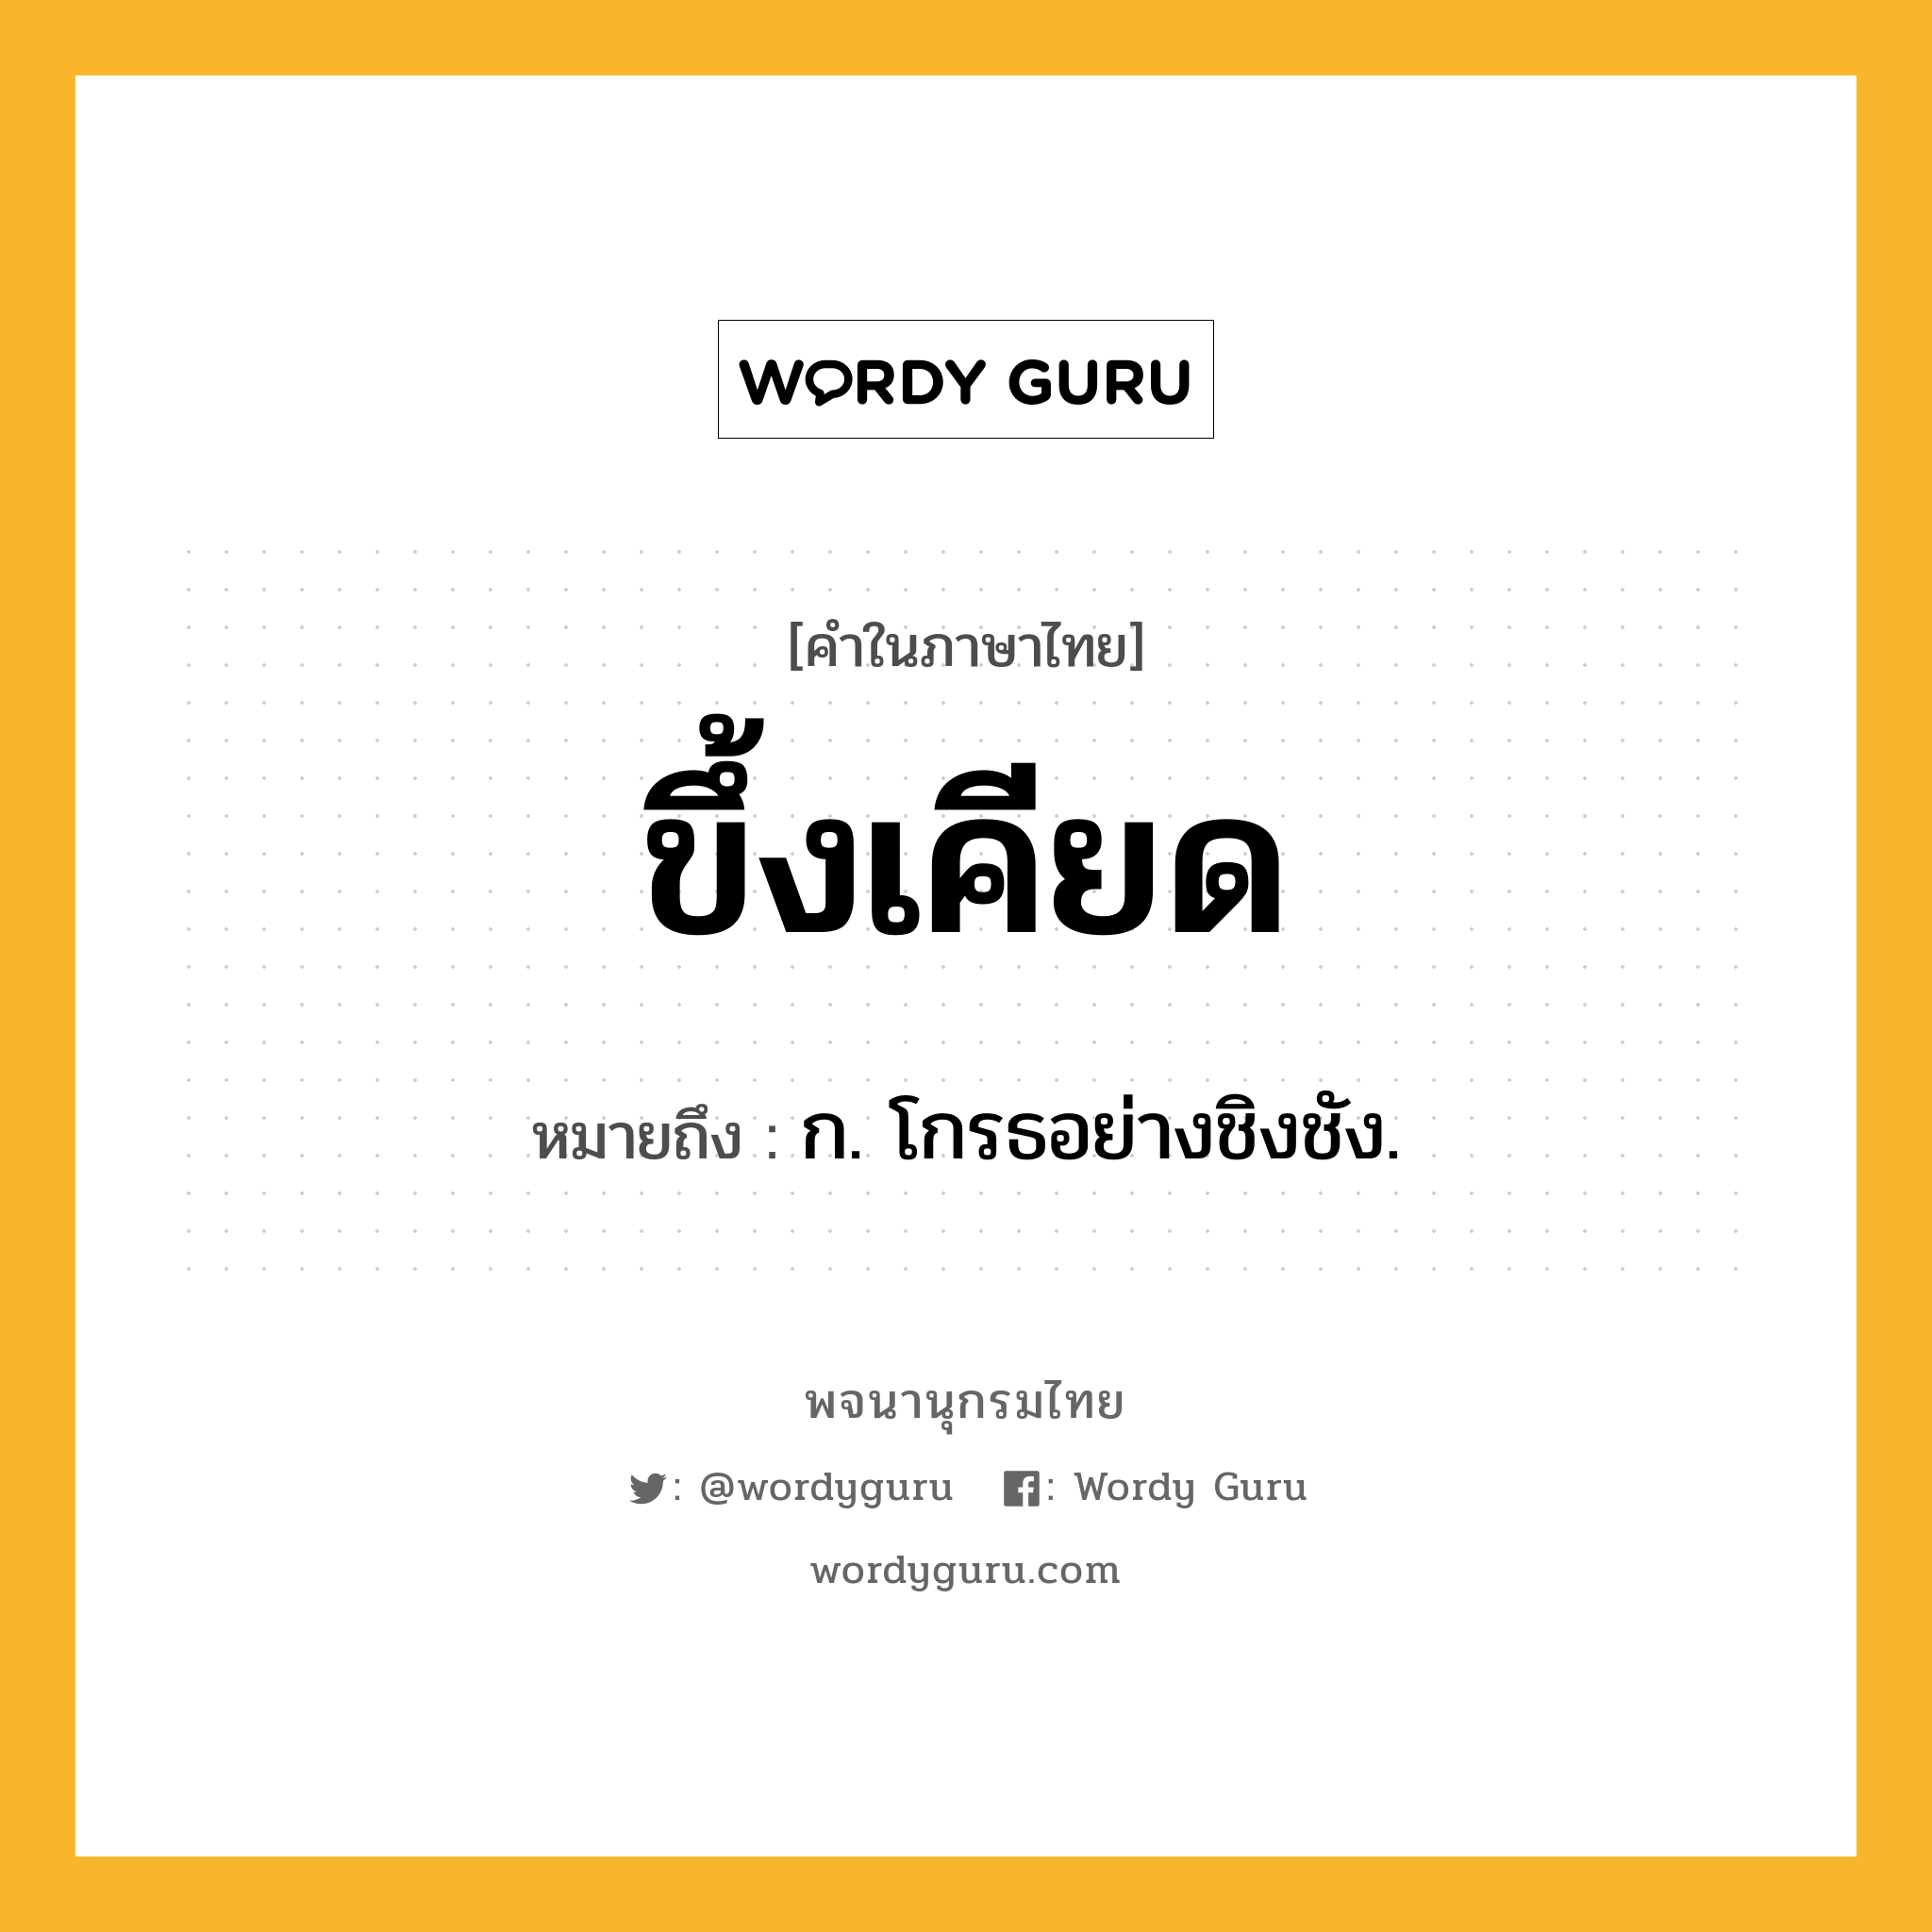 ขึ้งเคียด ความหมาย หมายถึงอะไร?, คำในภาษาไทย ขึ้งเคียด หมายถึง ก. โกรธอย่างชิงชัง.